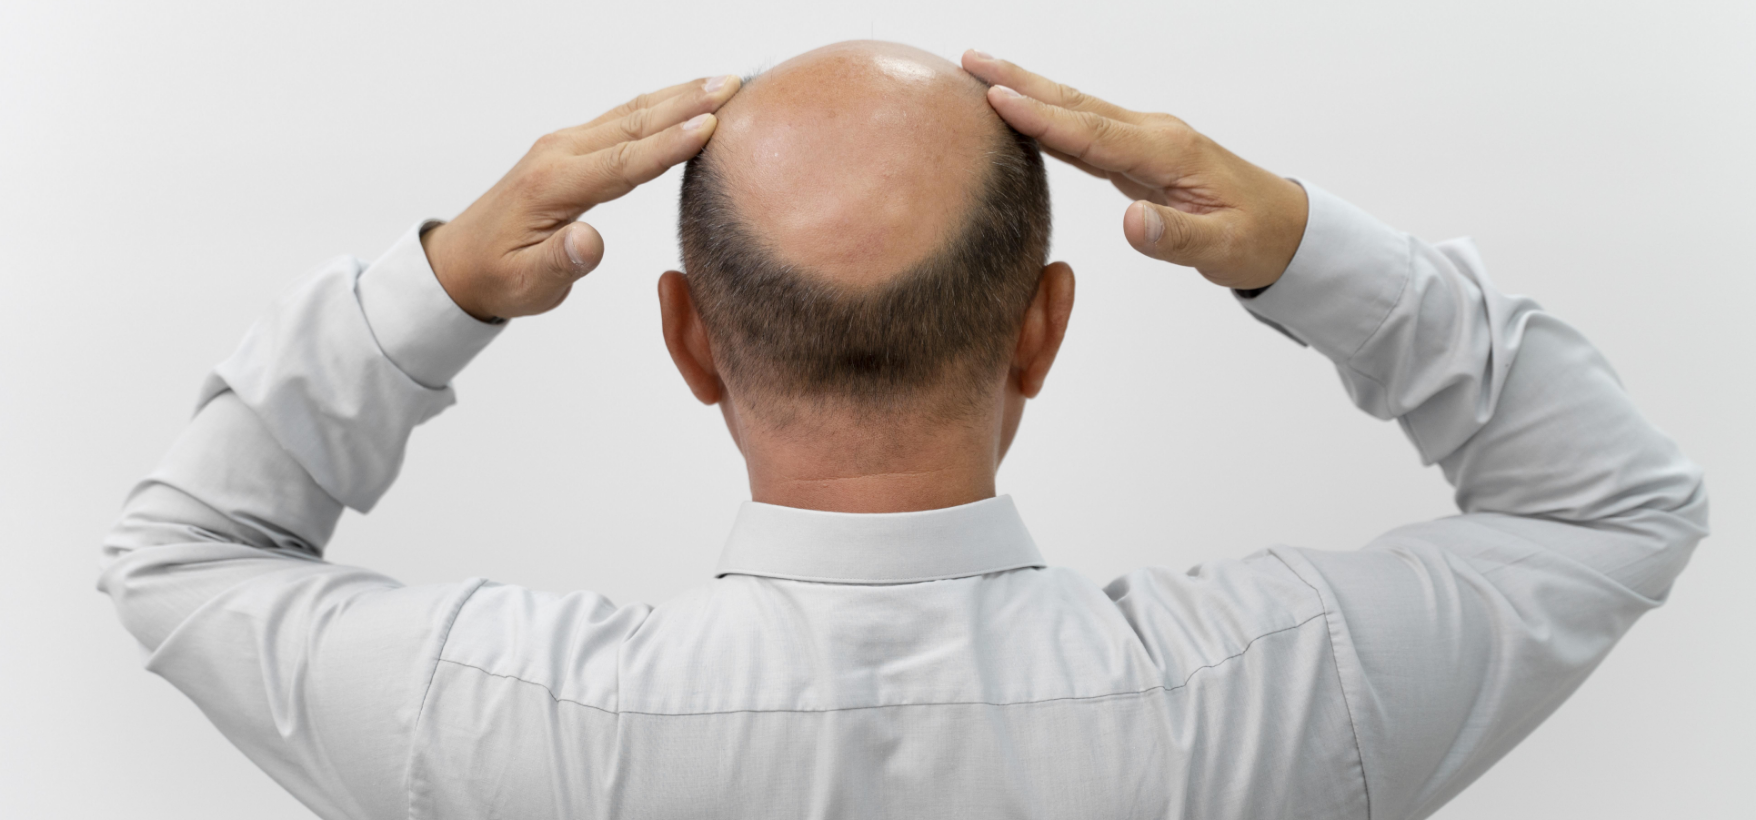 Main reasons for hair loss in Men